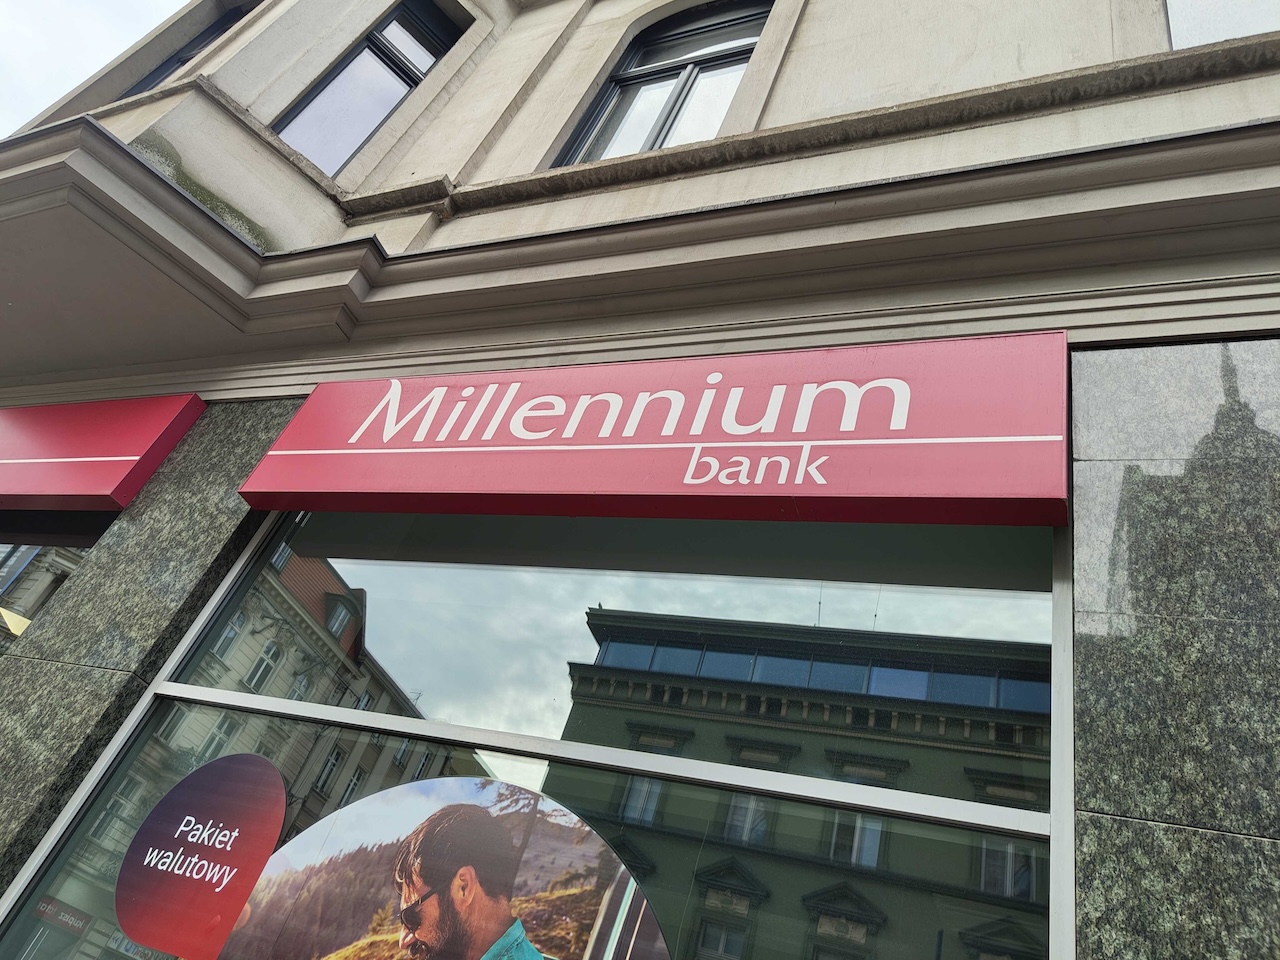 Millennium Bank – ostrzeżenie dla klientów. Grasują naciągacze